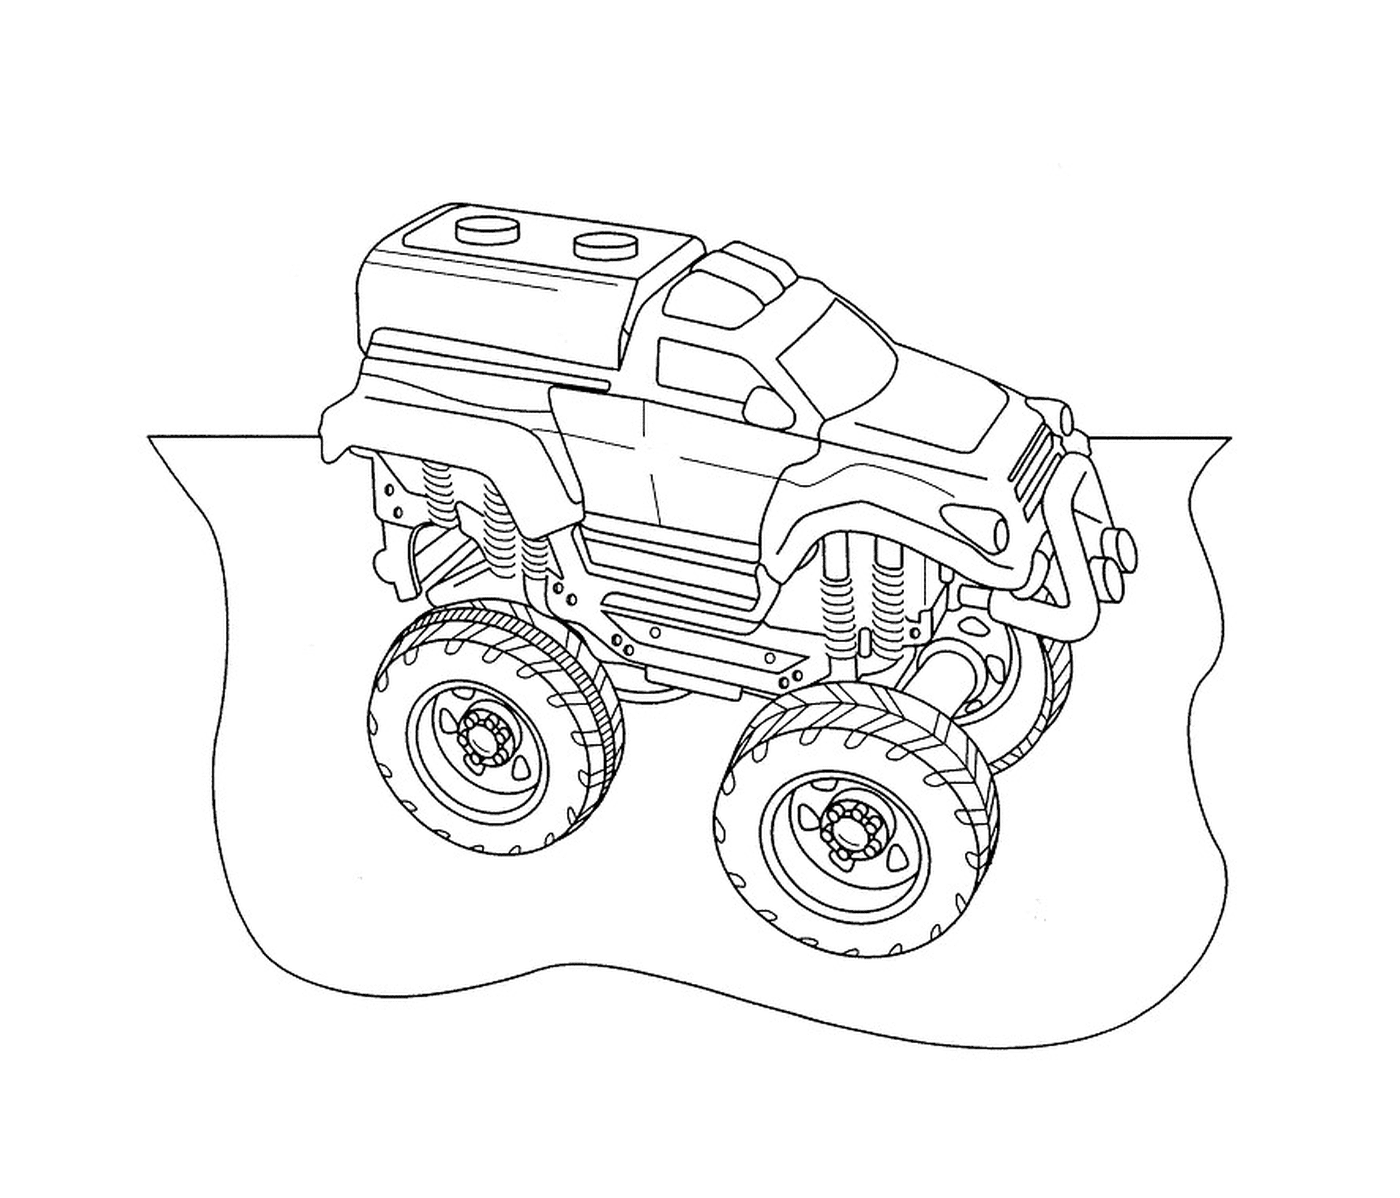  Coches de rally, camión monstruo 